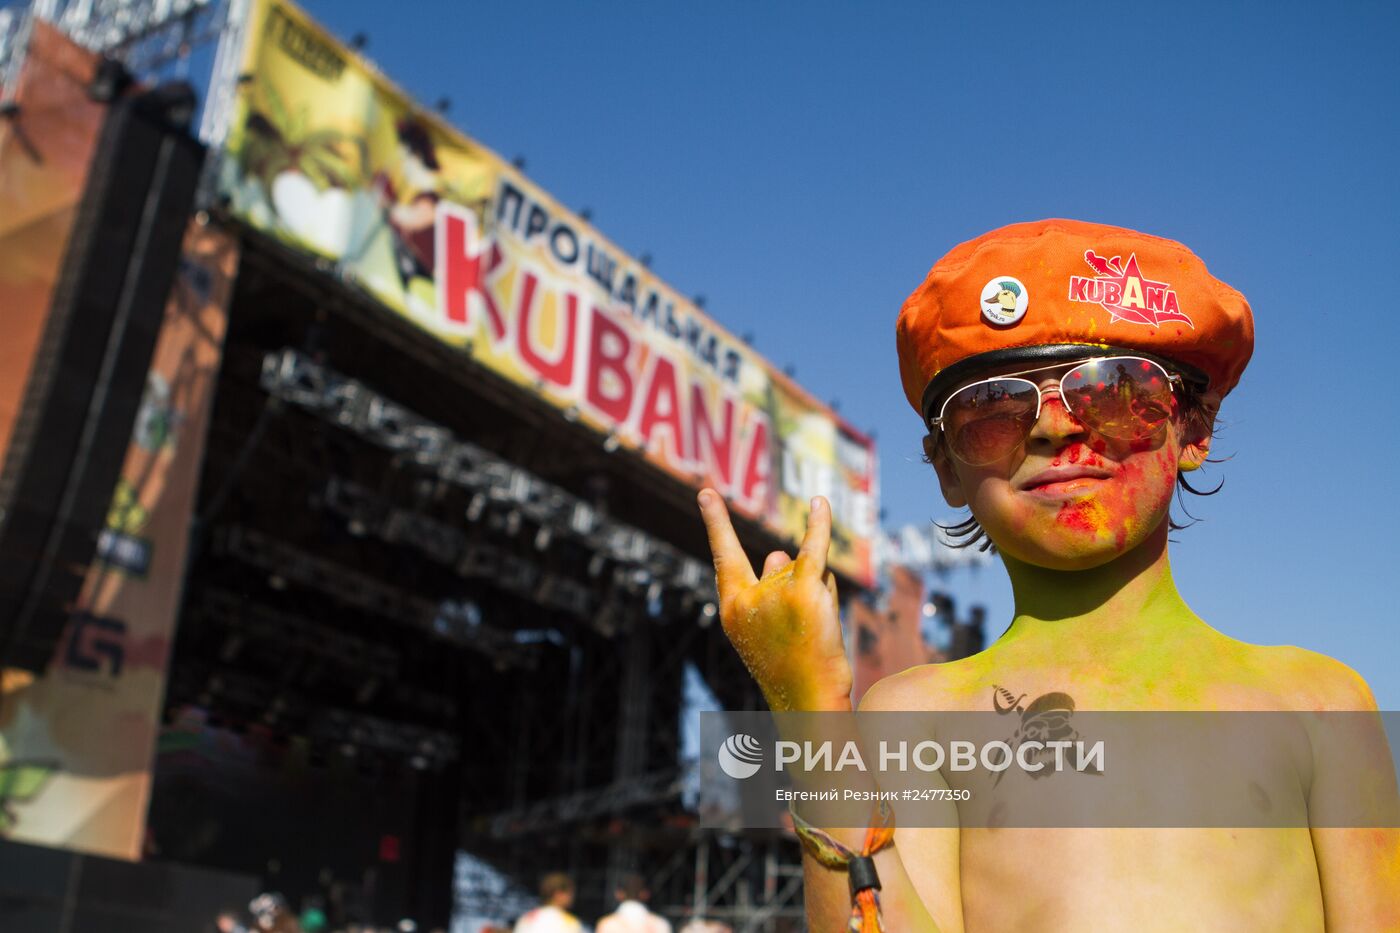 Фестиваль "Кубана" в Краснодарском крае